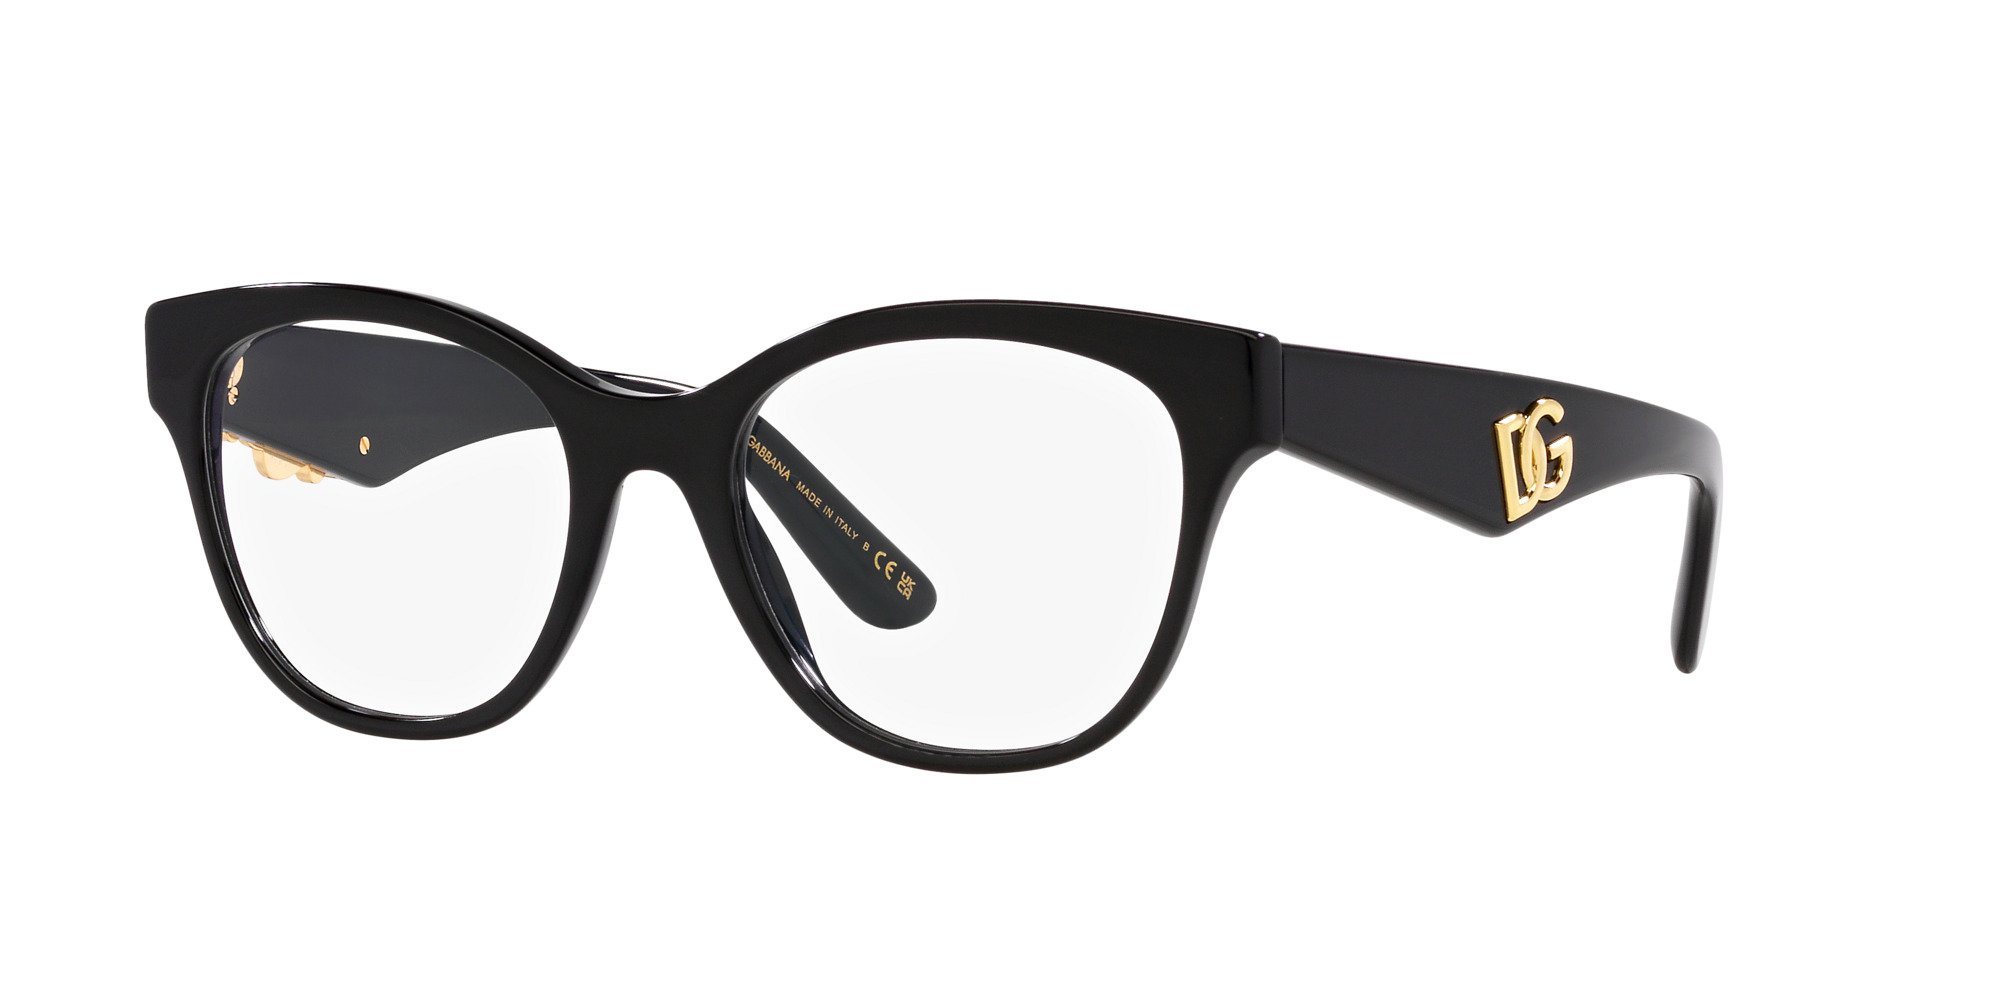 Das Bild zeigt die Korrektionsbrille DG3371 501 von der Marke D&G in schwarz.